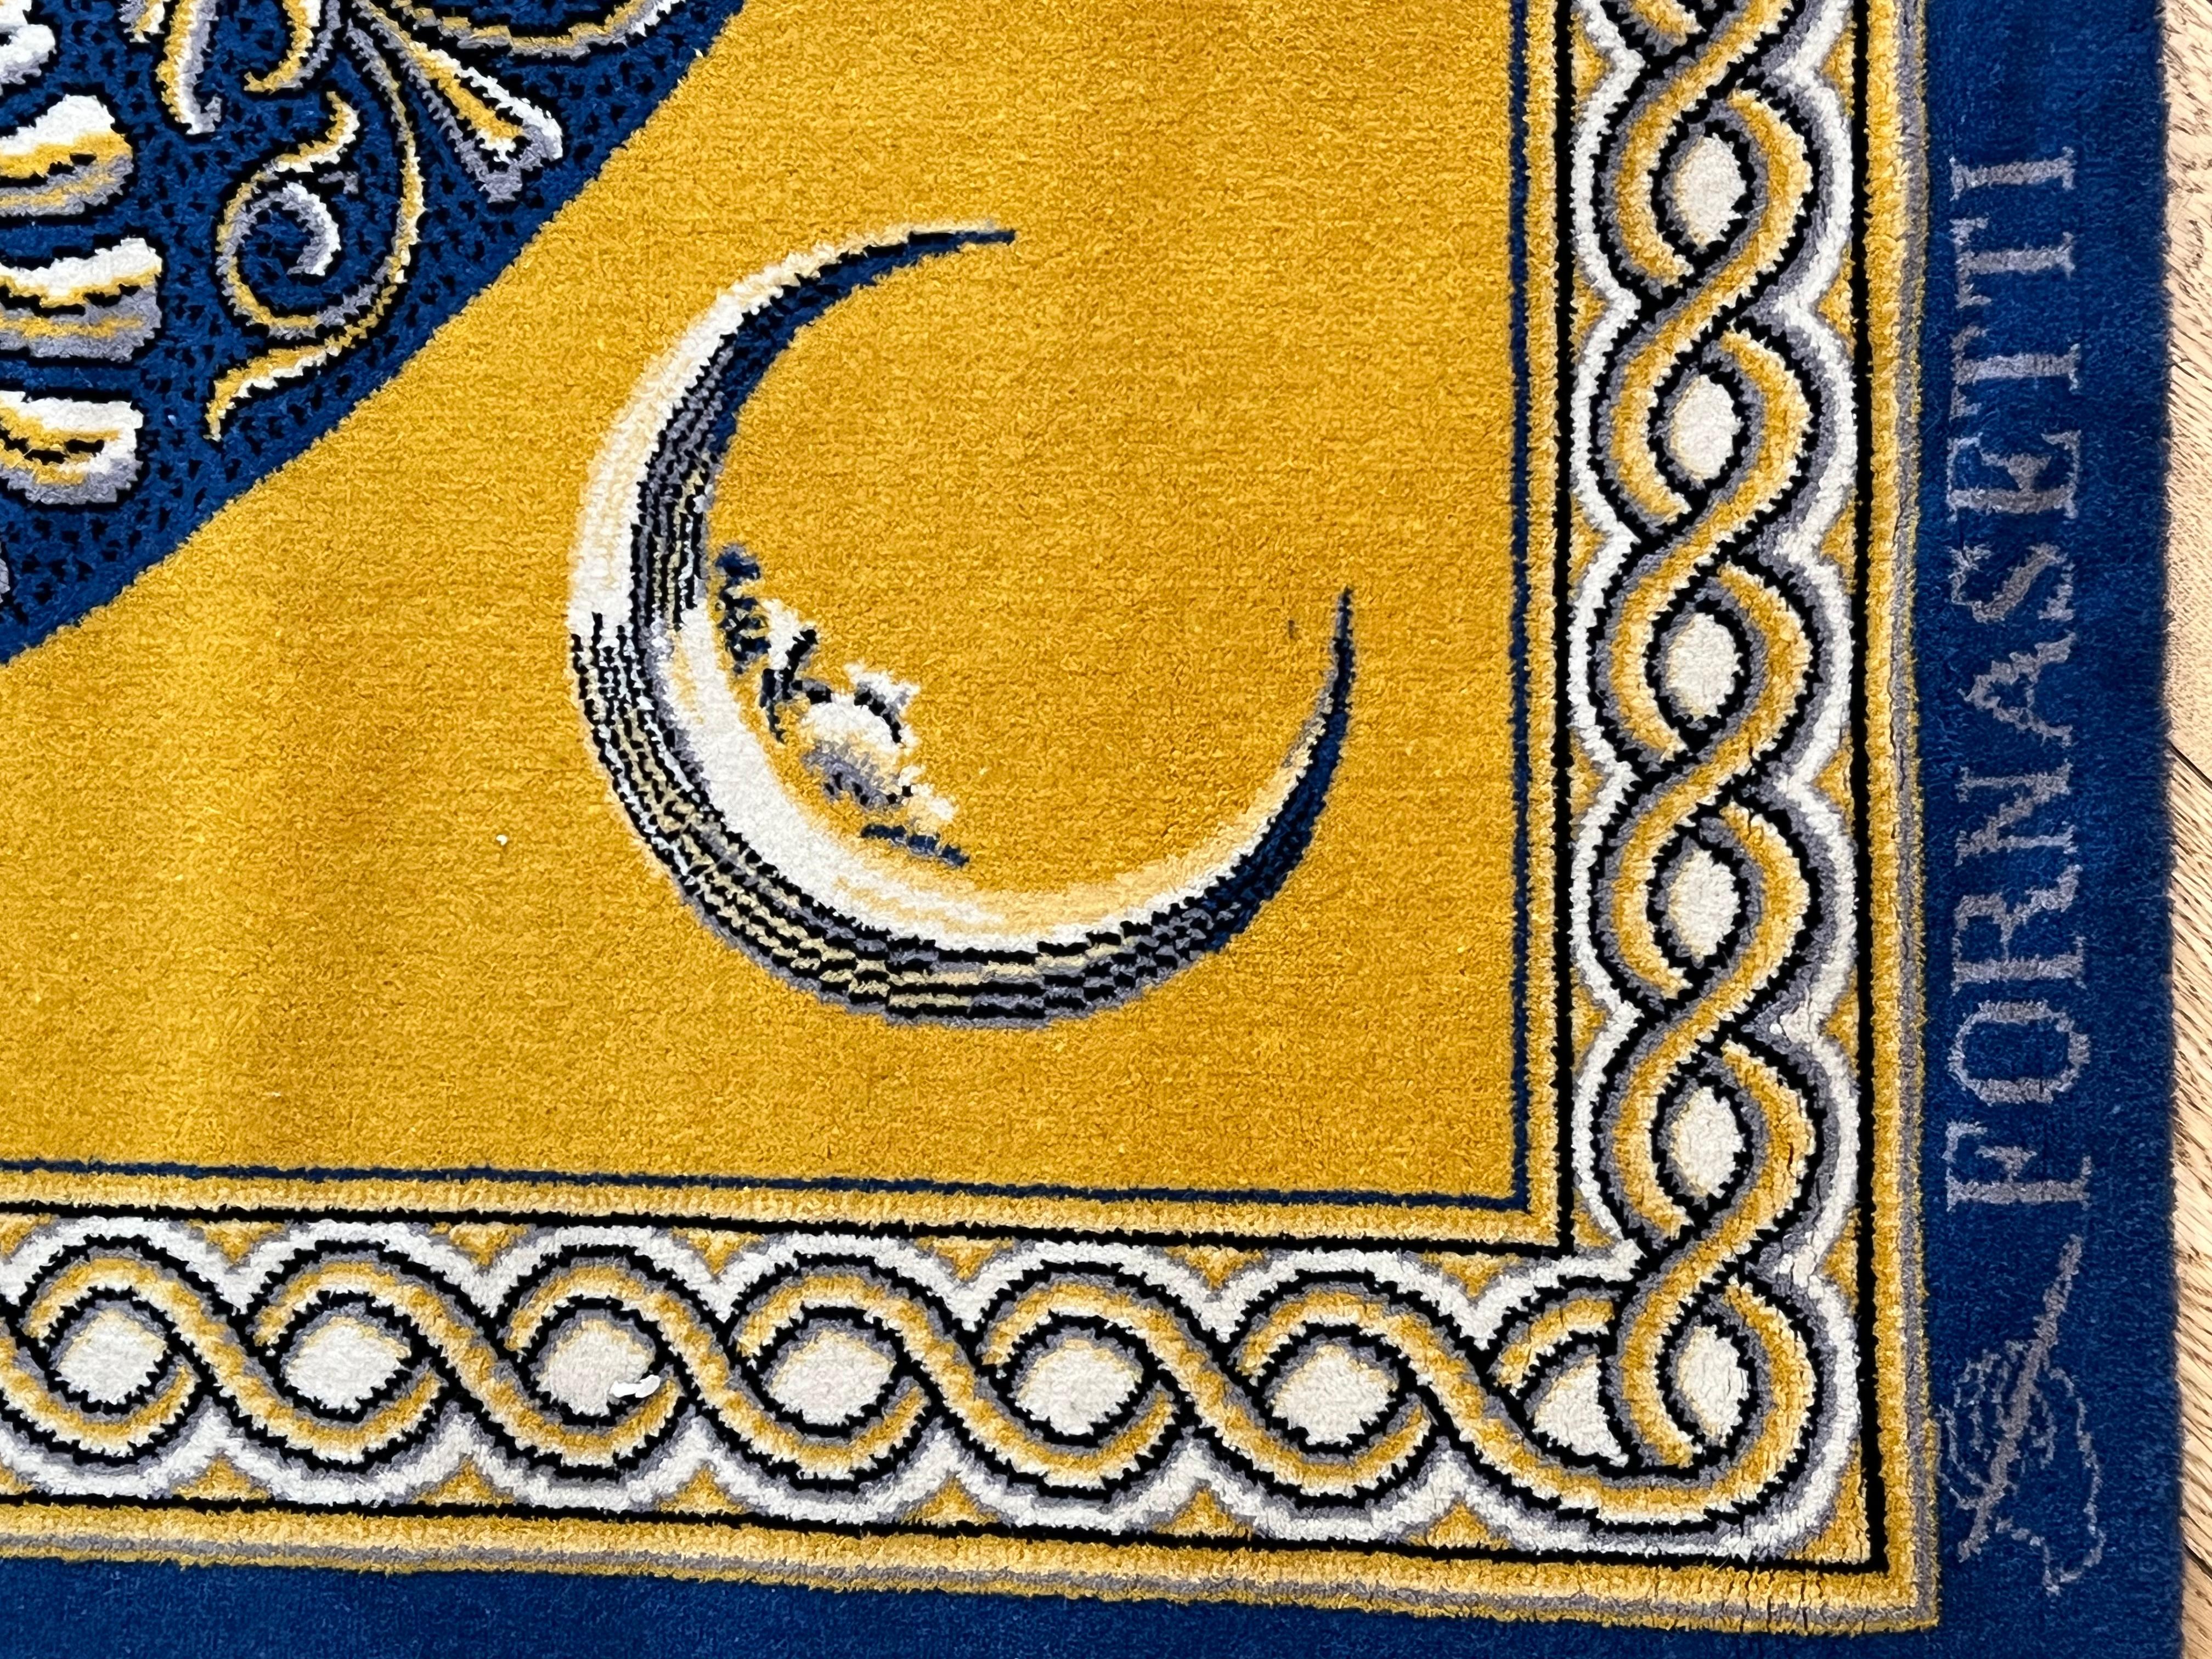 Wool 20th Century Piero Fornasetti Sun Moon Face Yellow Blue Rug, ca 1980